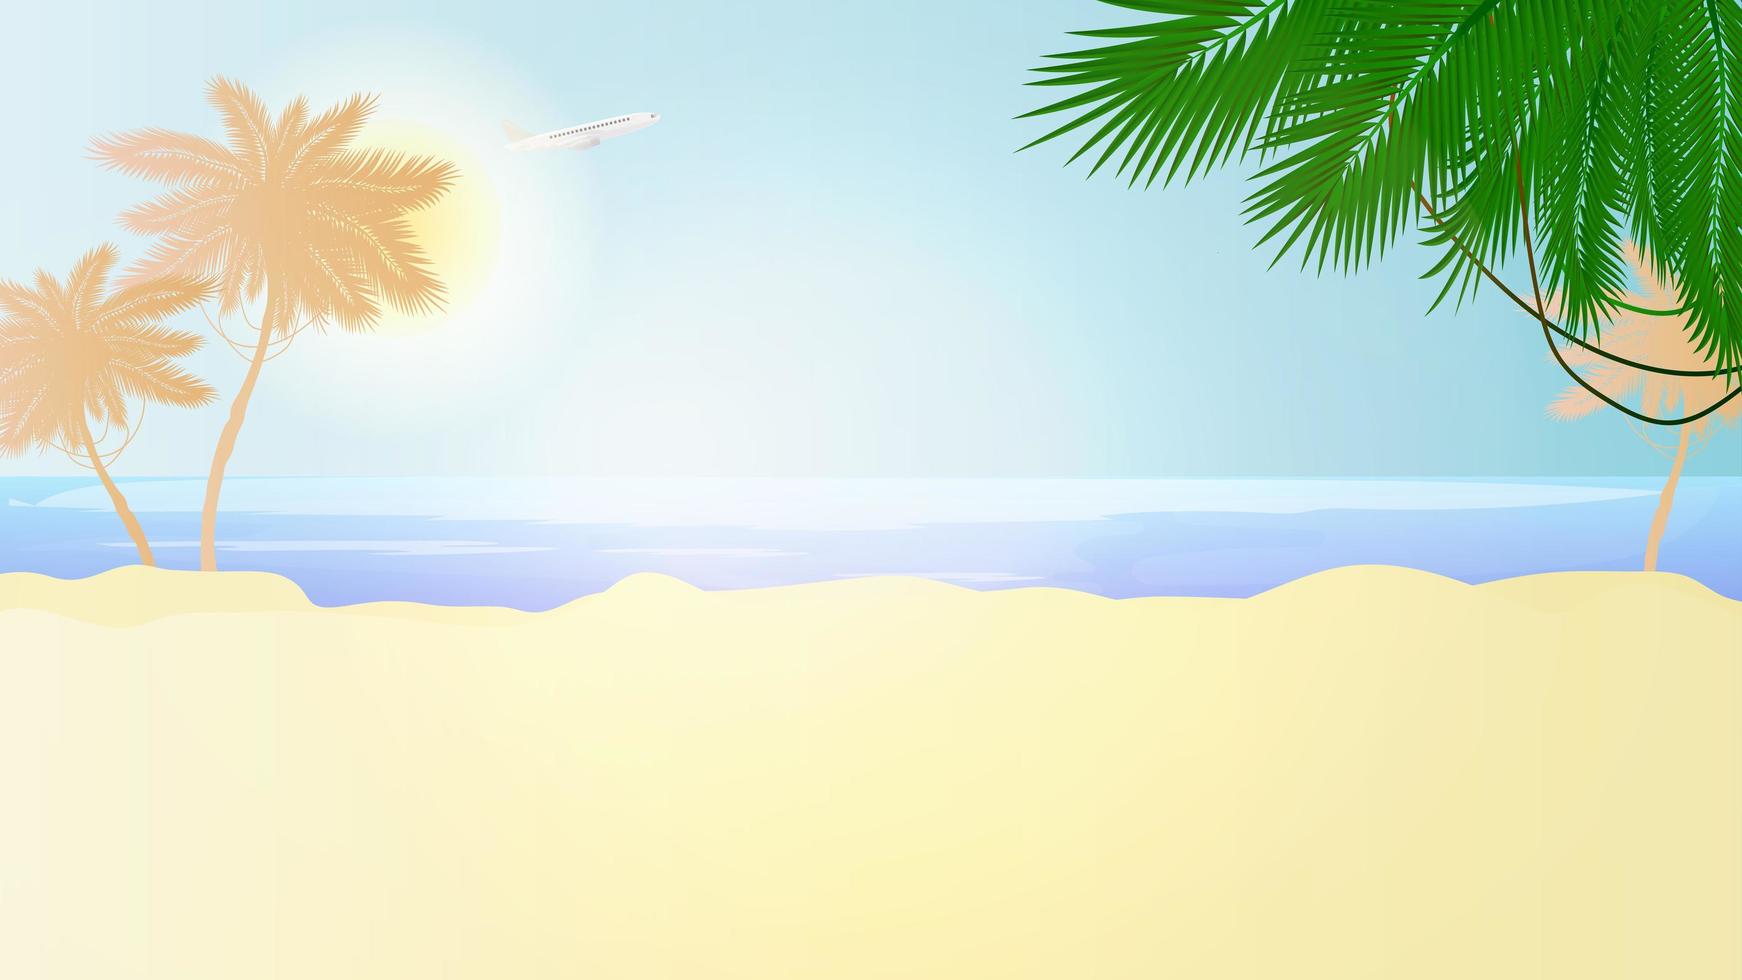 praia ensolarada em um estilo simples. palmeiras, areia, mar, céu e sun.illustration com lugar para texto. vetor. vetor